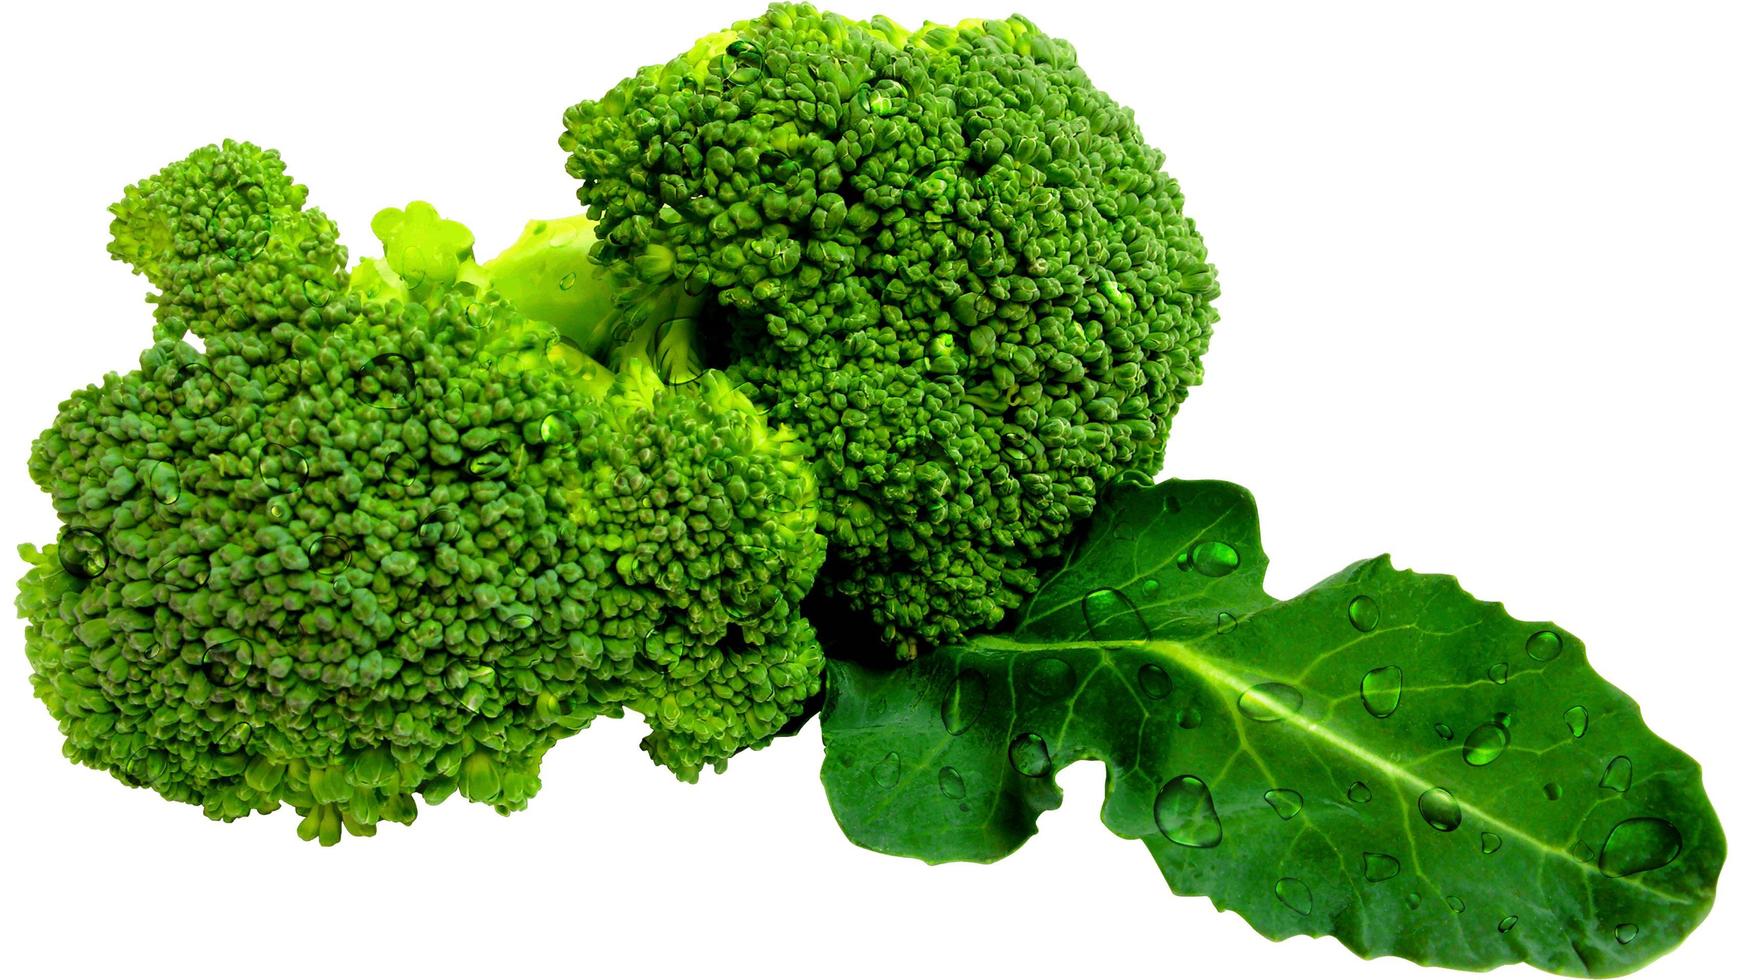 broccoli grön vegetabiliska på vit bakgrund med vatten droppar närbild makro horisontell fotografi foto